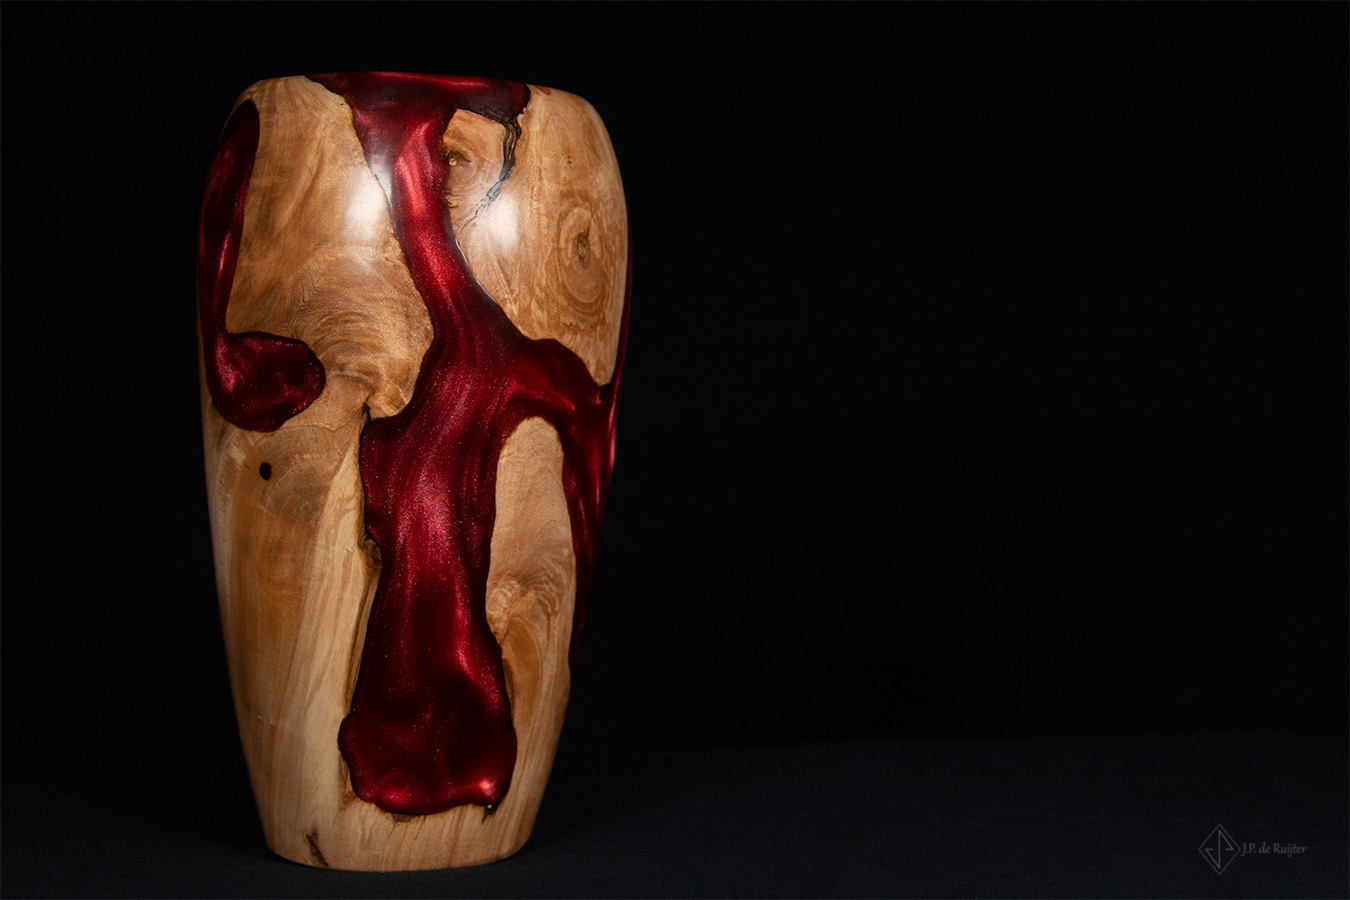 Handgemaakte vaas van hout met epoxy in kersen rood, vooraanzicht.